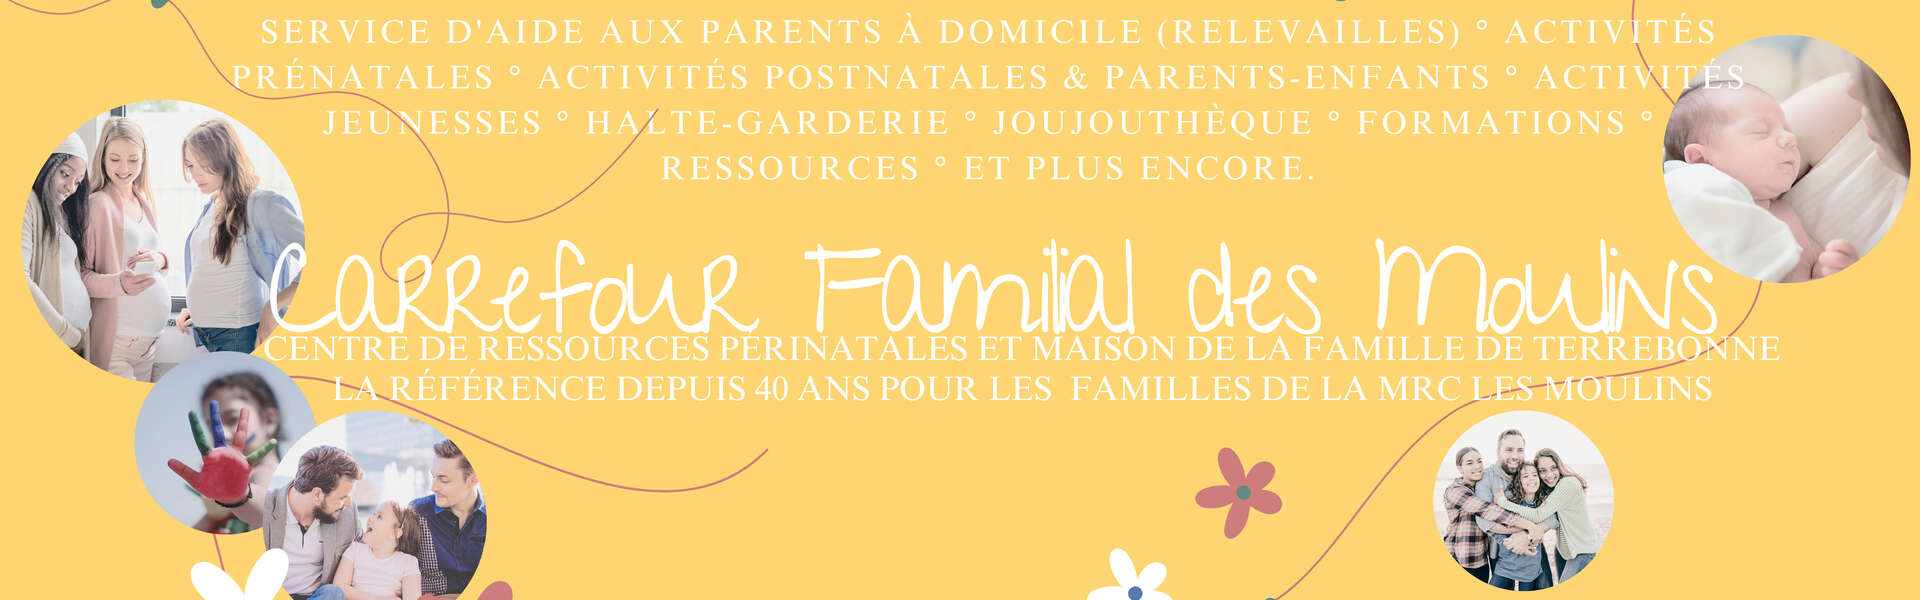 Carrefour Familial Des Moulins - Bandeau